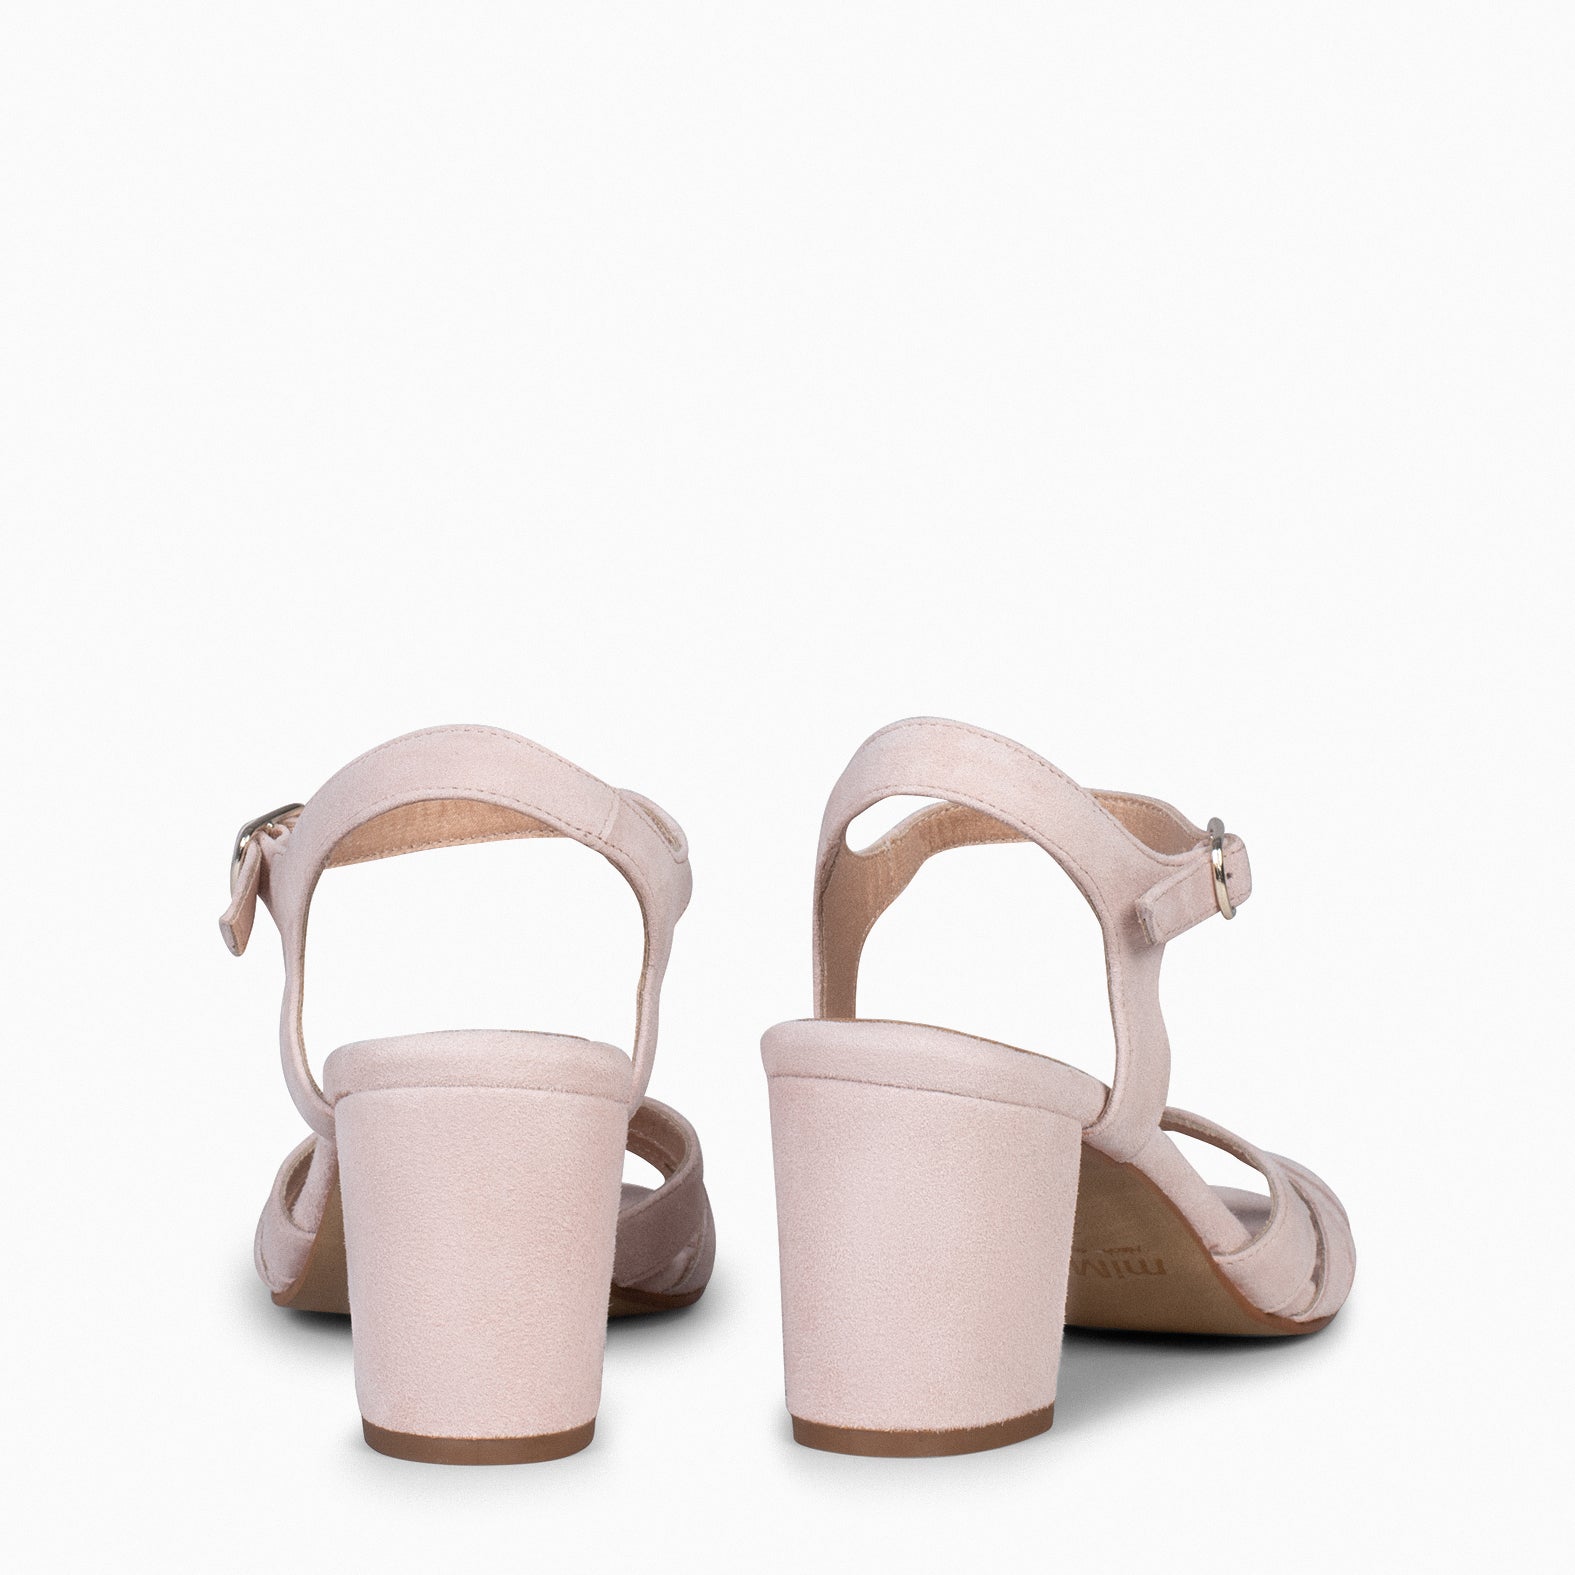 MUSE – NUDE block heel sandals